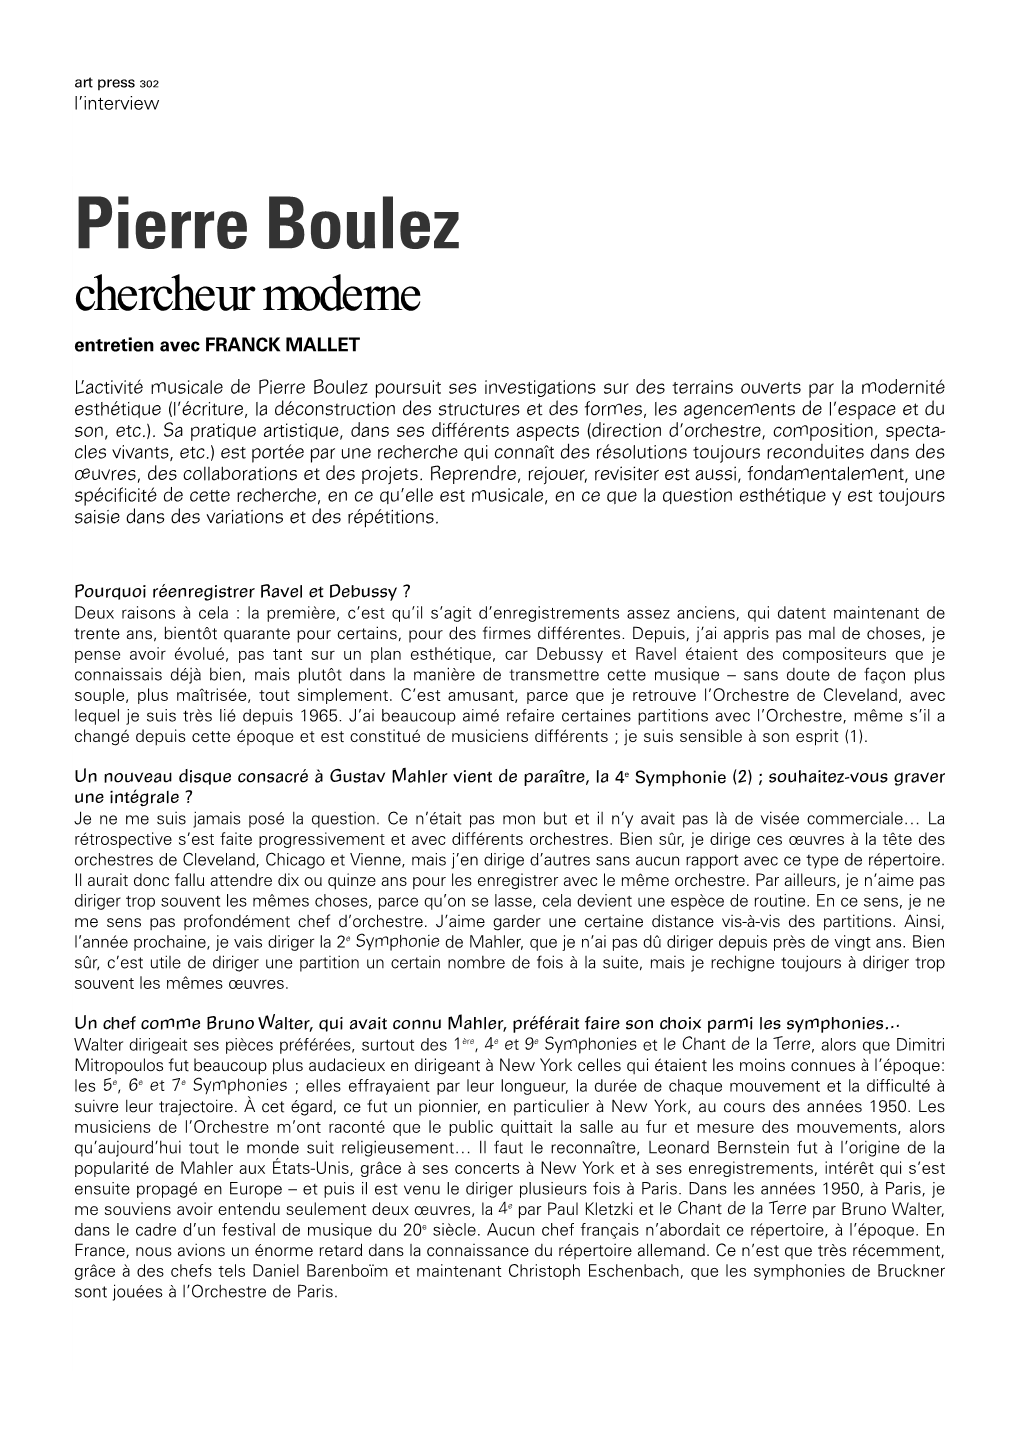 Pierre Boulez Chercheur Moderne Entretien Avec FRANCK MALLET